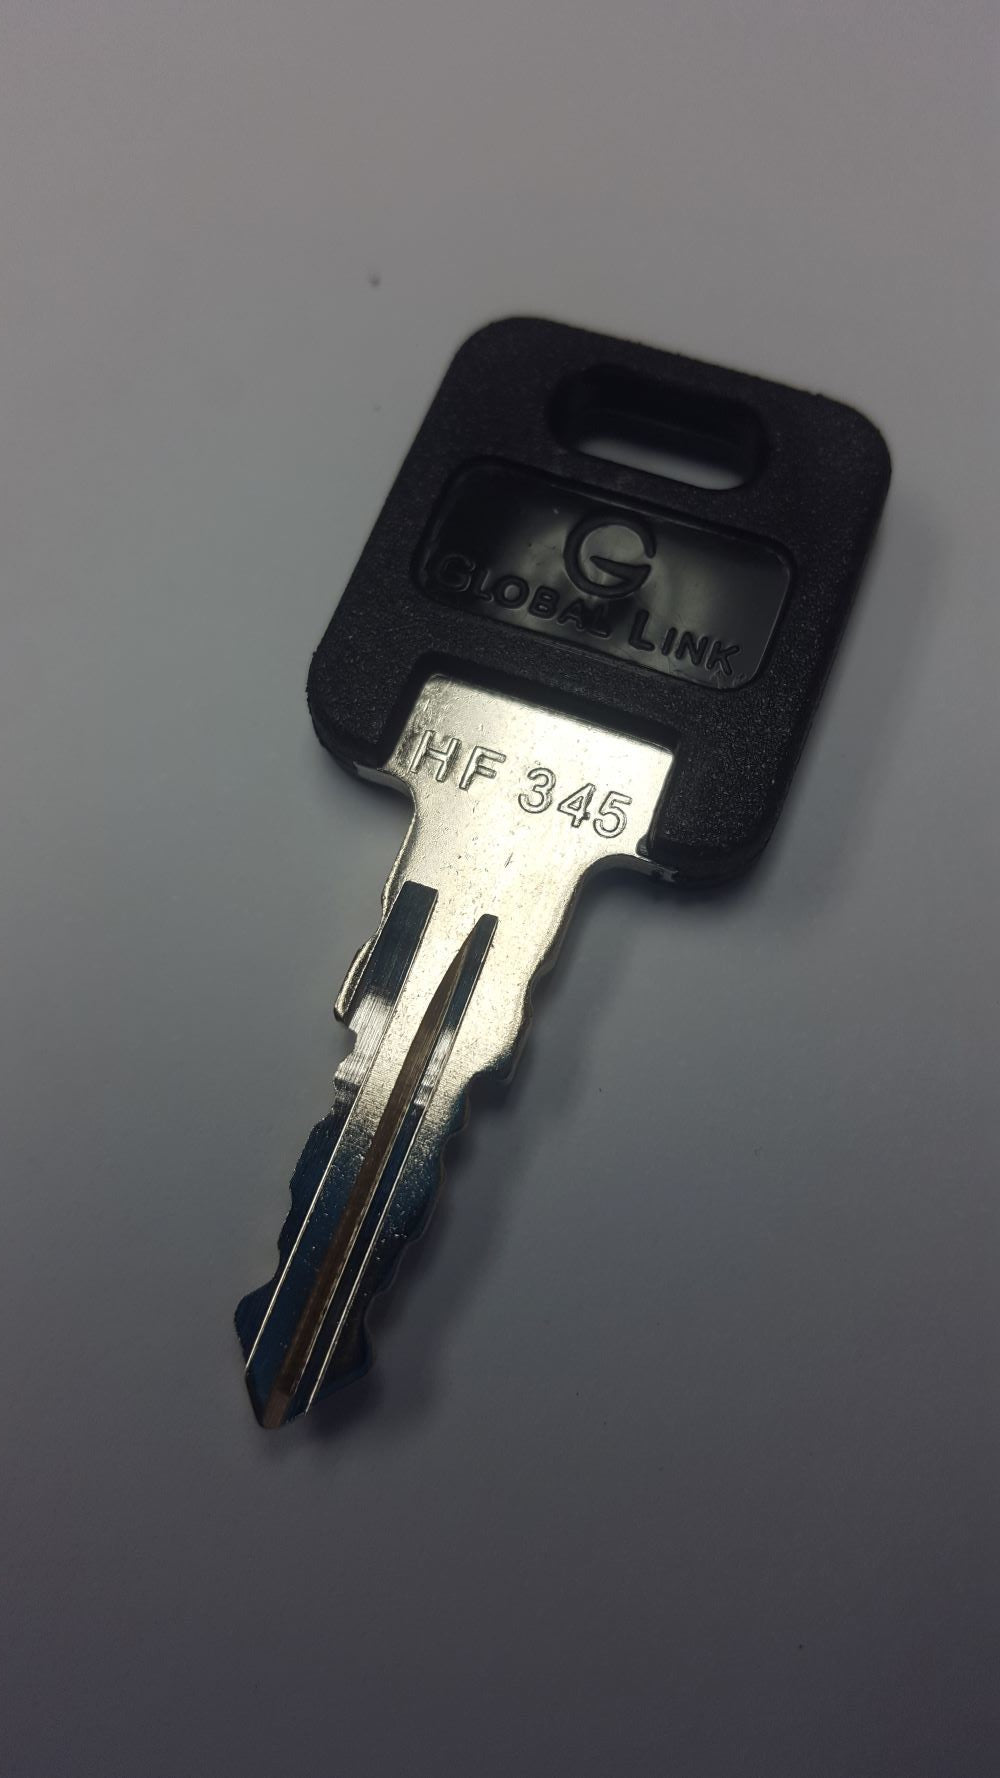 CPG KEY-HF-345 Pre-cut Stamped FIC Replacemnt HF345 Key